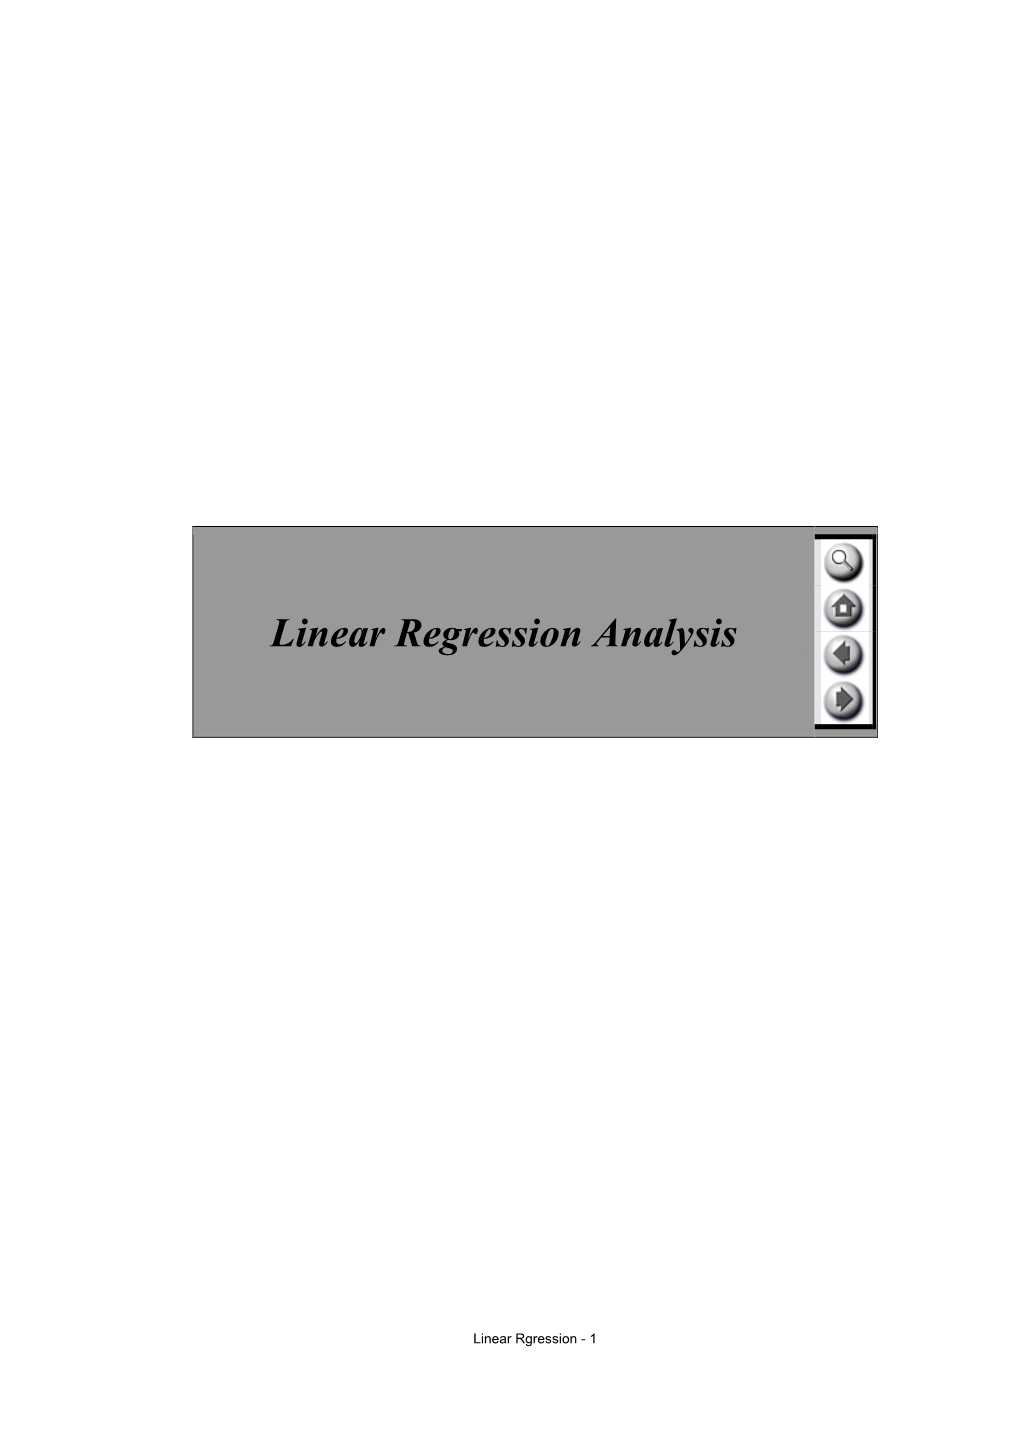 Case Studies SPSS Regression Analysis